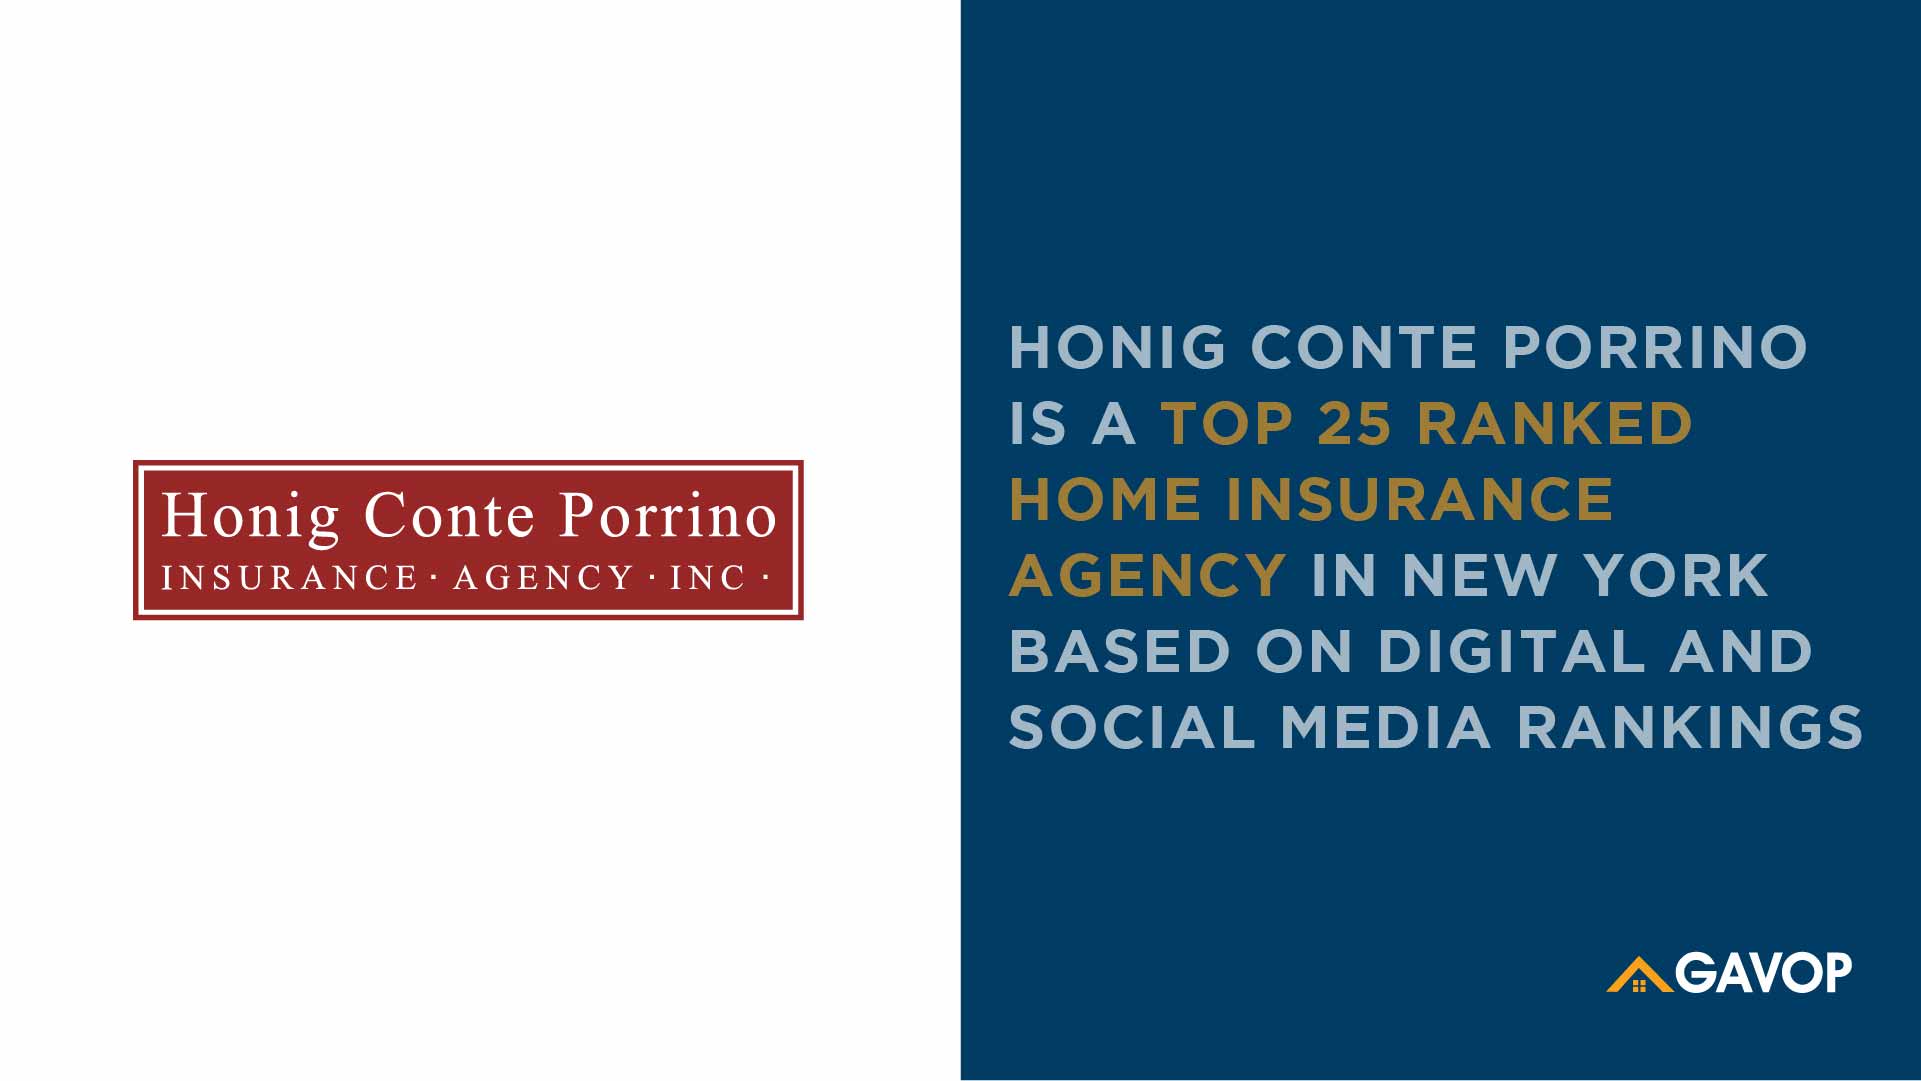 Honig Conte Porrino Insurance Agency Inc